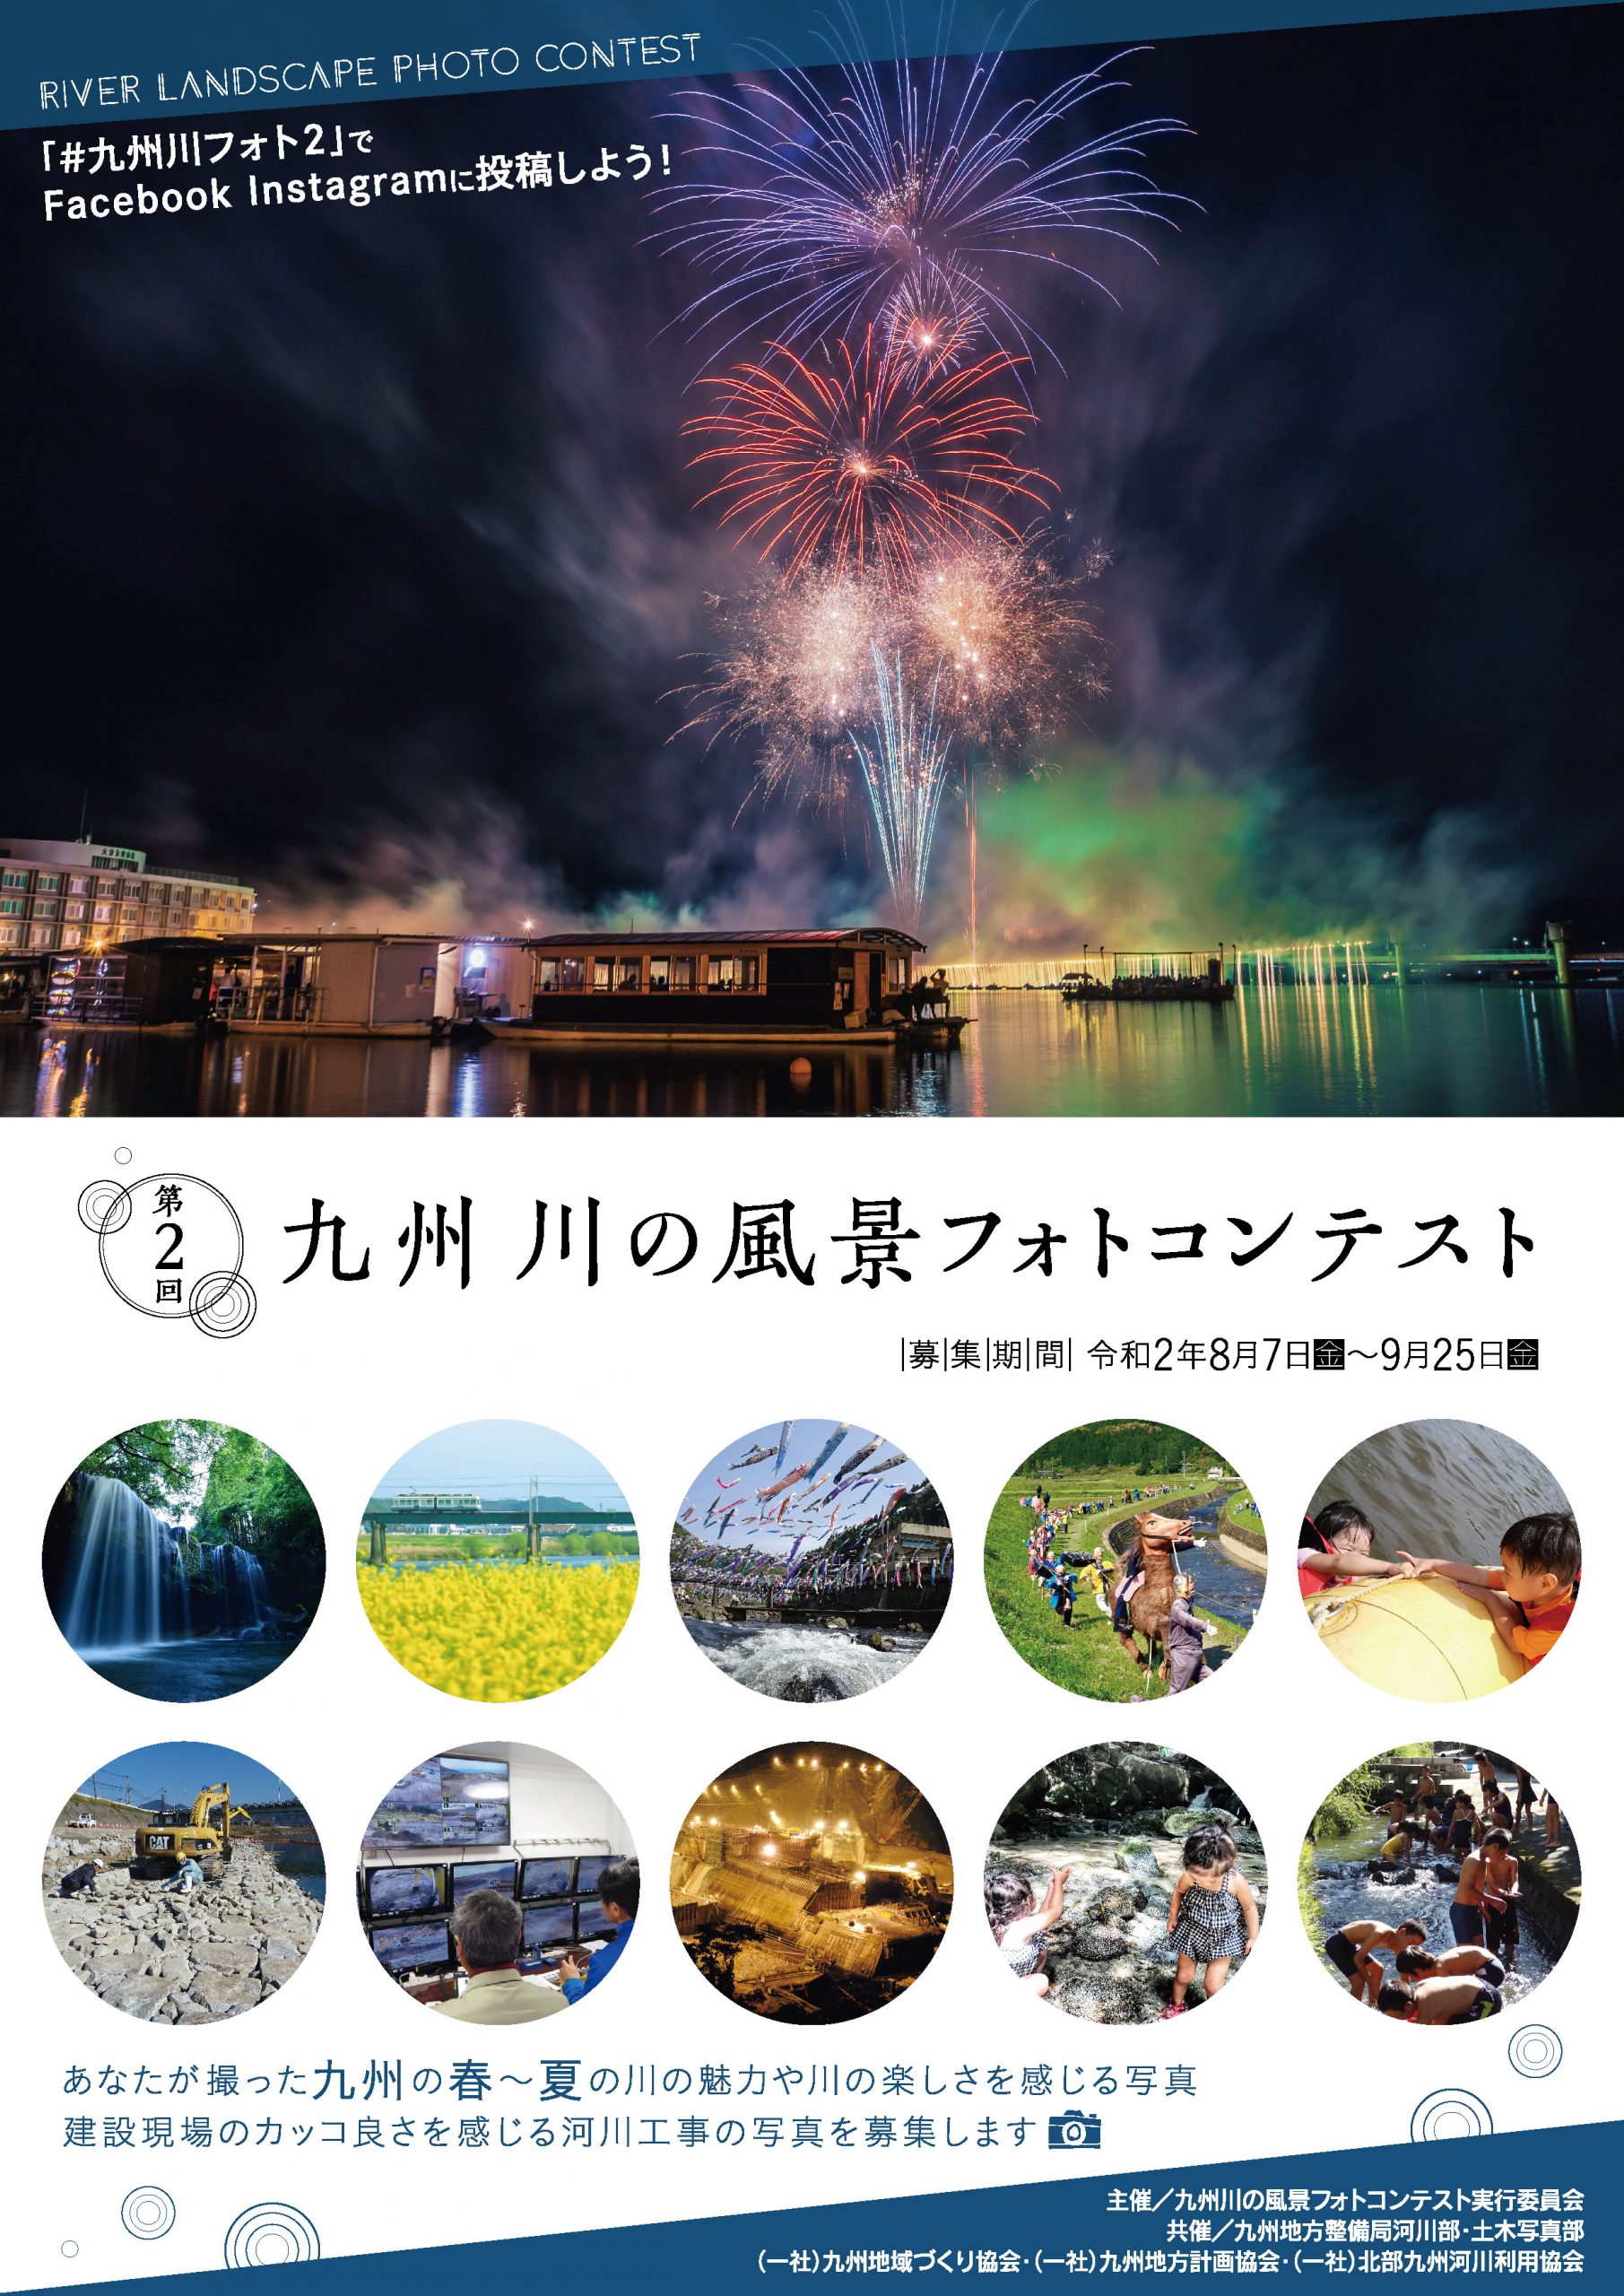 【終了】「第2回九州川の風景フォトコンテスト」の募集について